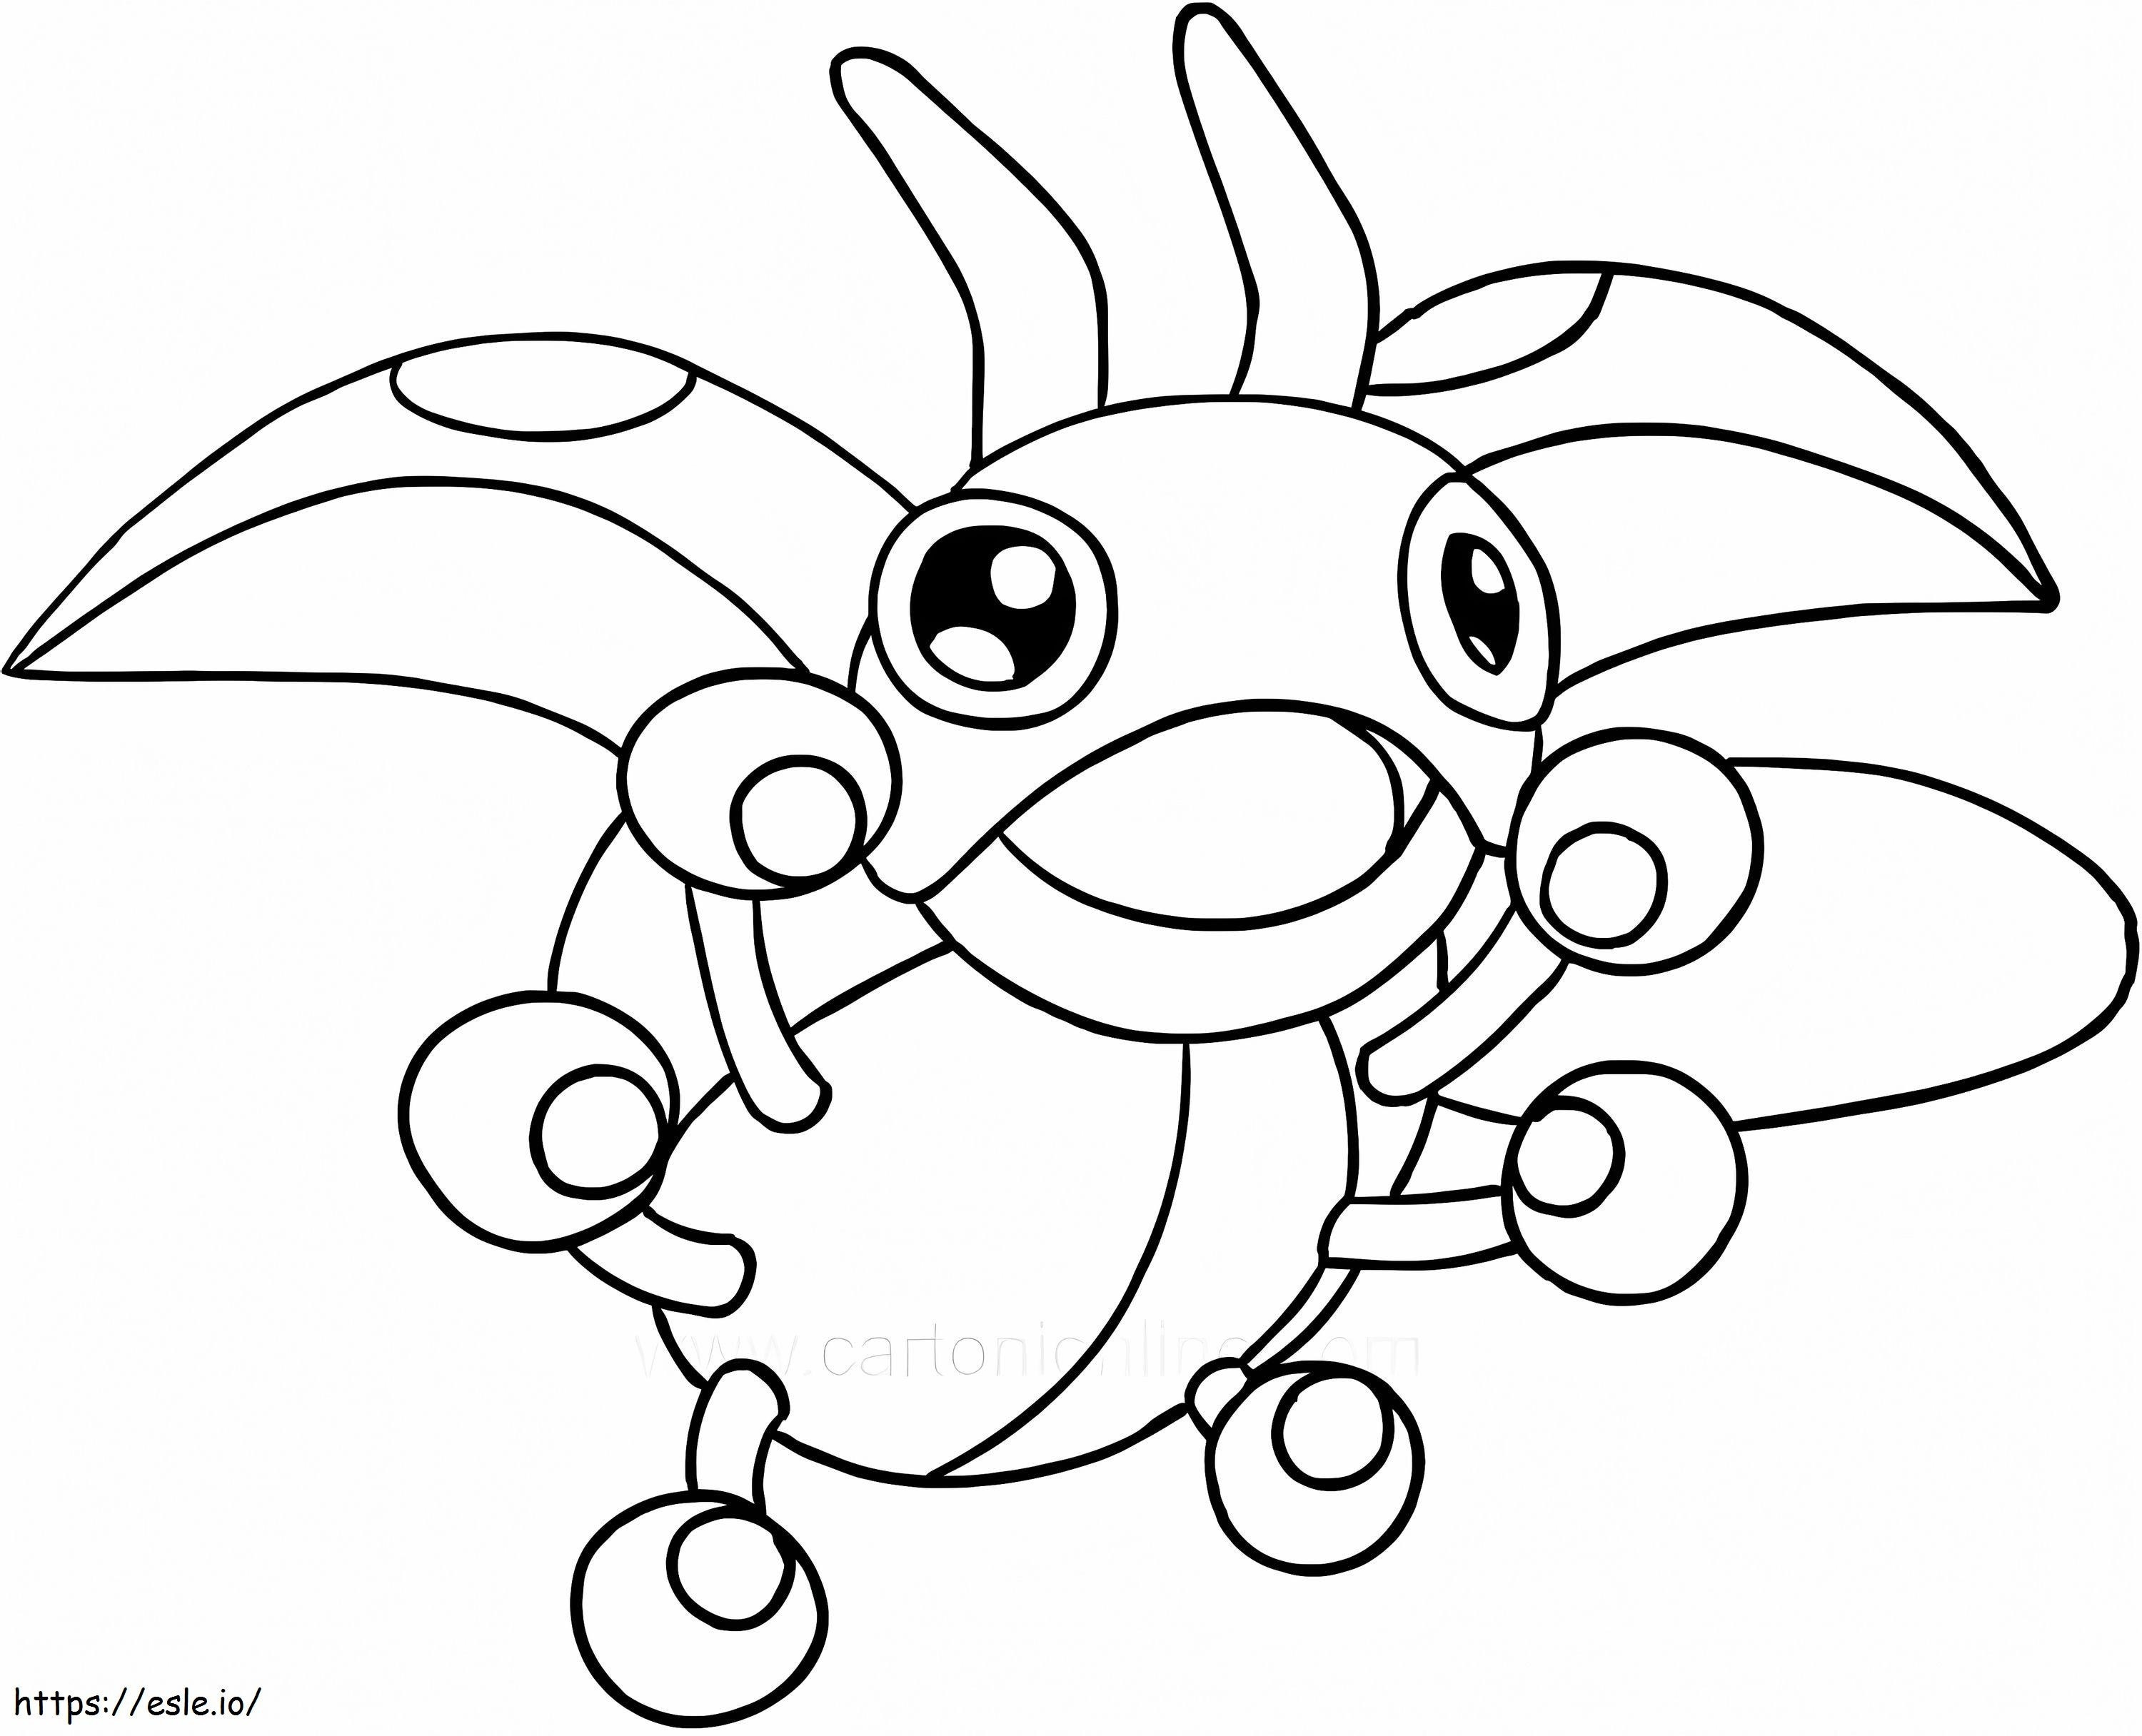 Printable Ledyba Pokemon coloring page